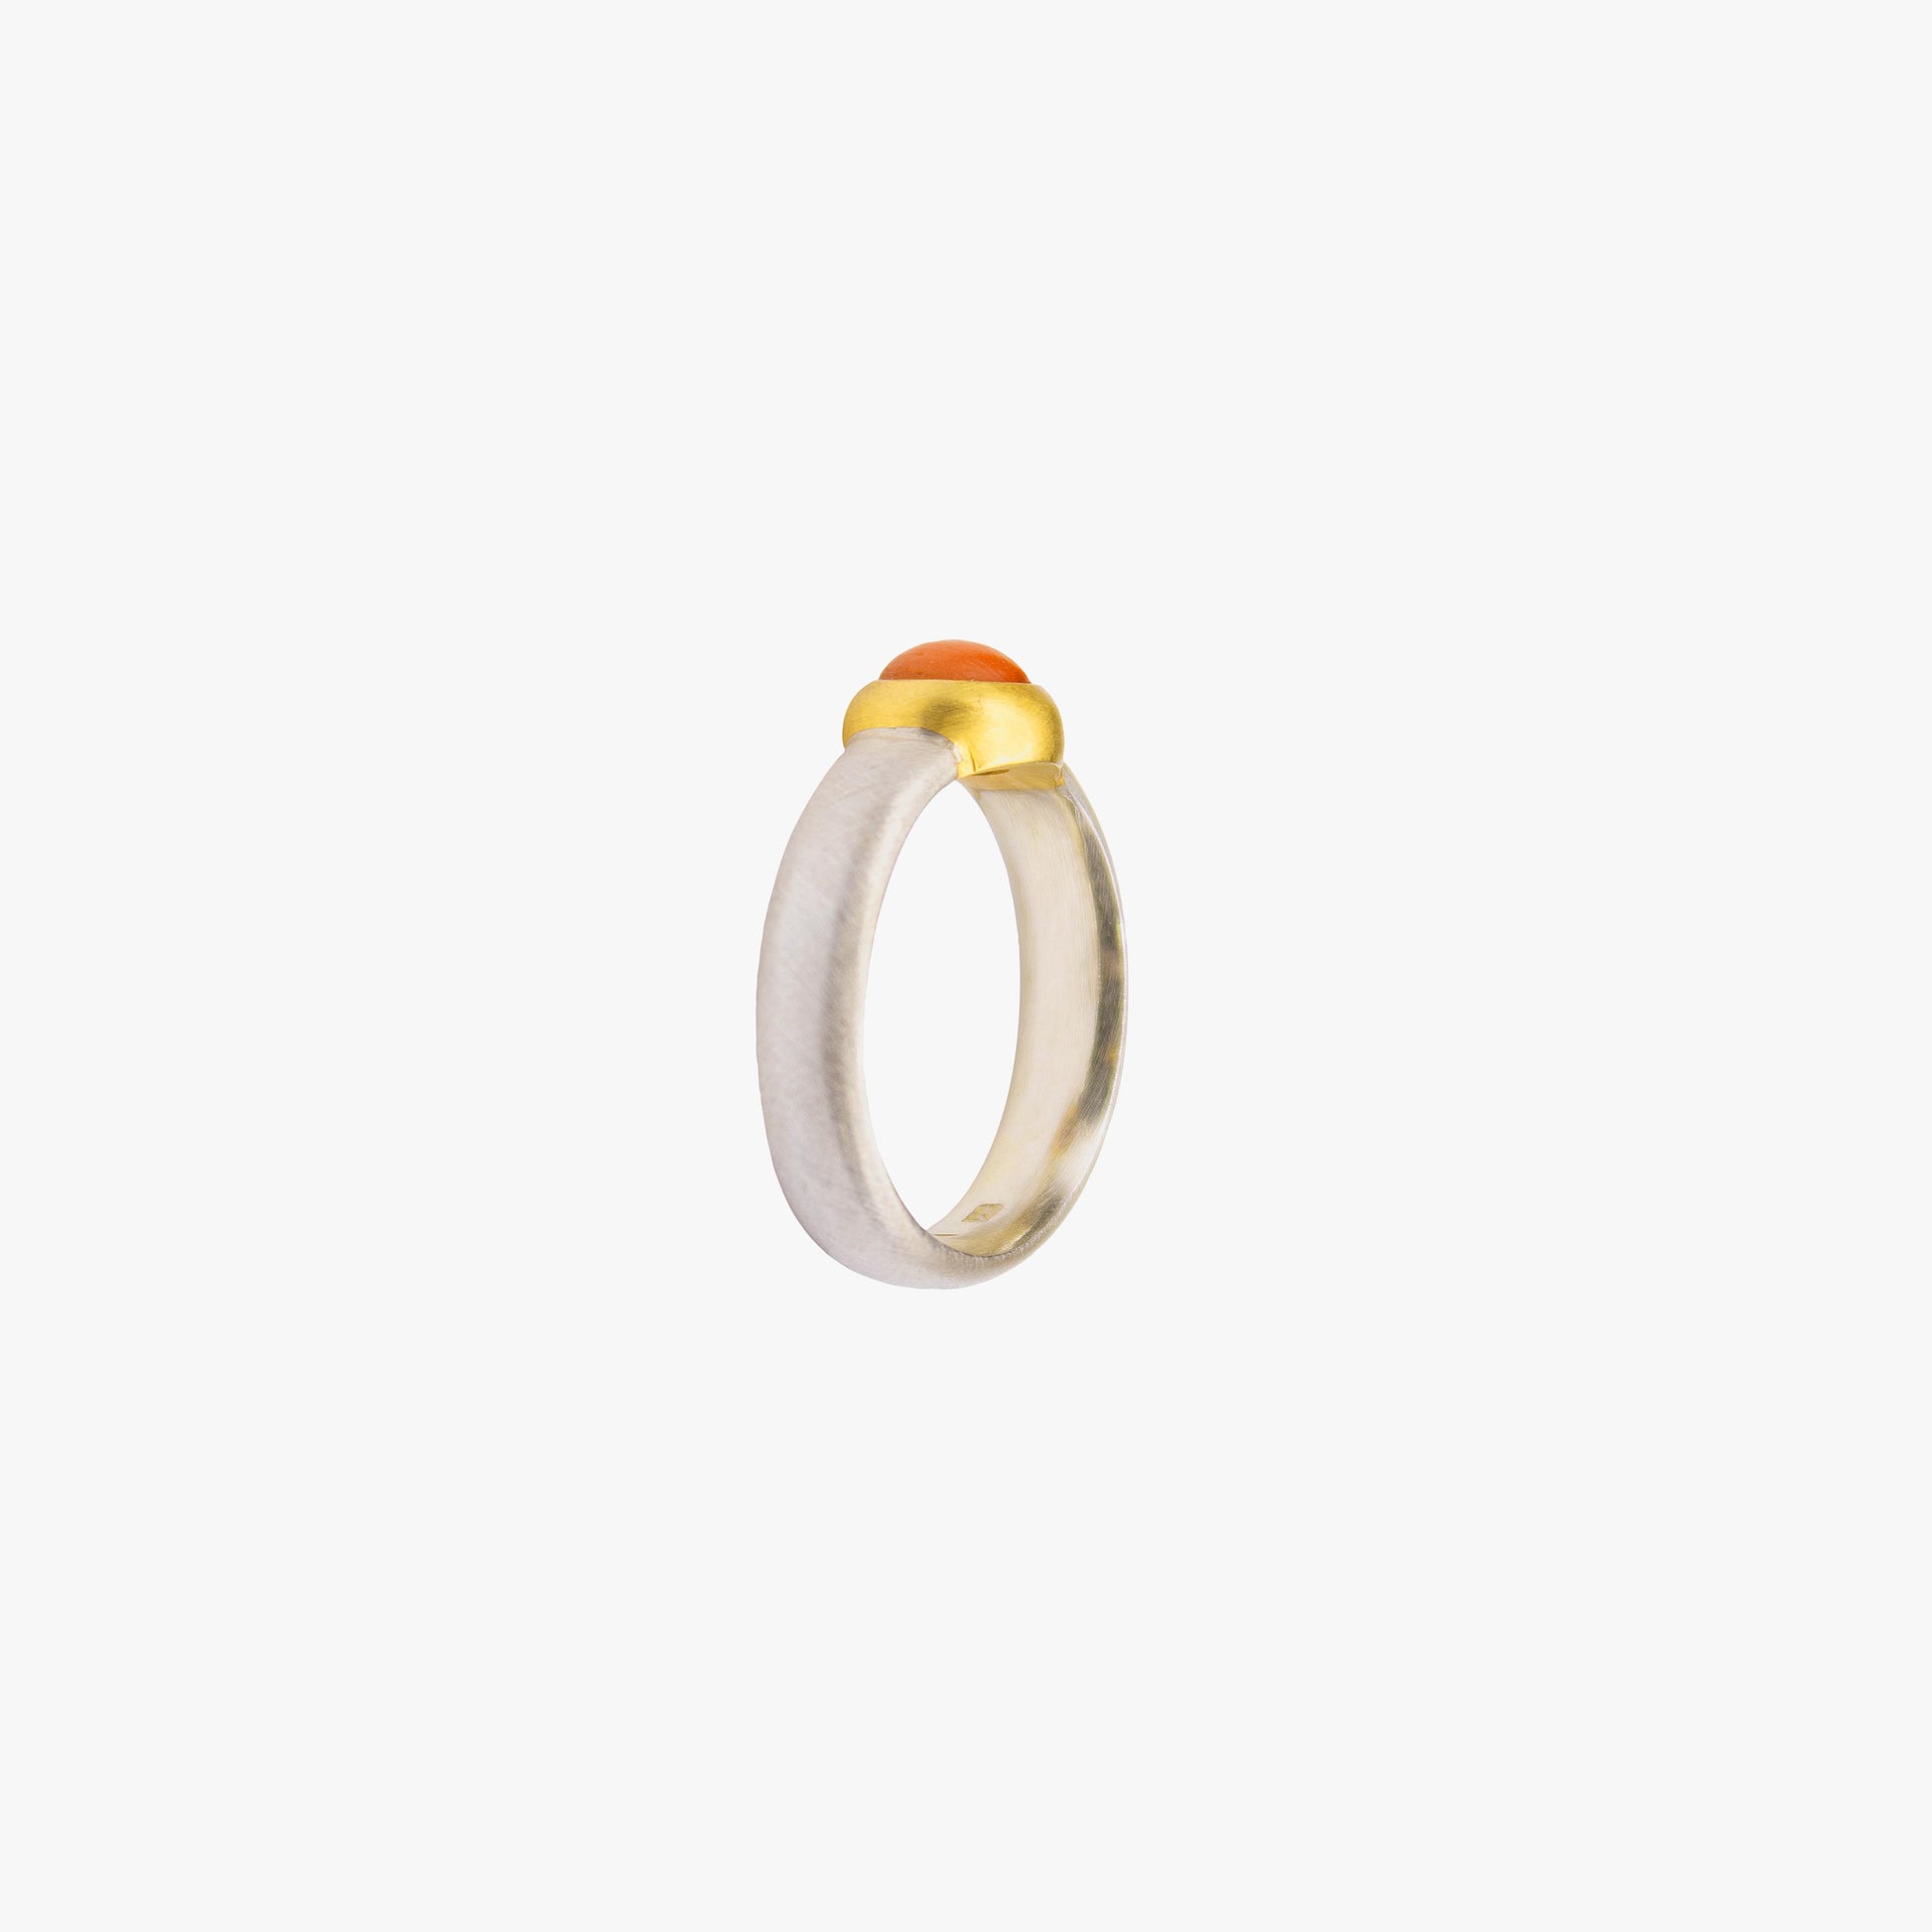 Der Ring ANDI besteht aus Sterlingsilber, einer galvanischen Vergoldung sowie einem Korall-Stein